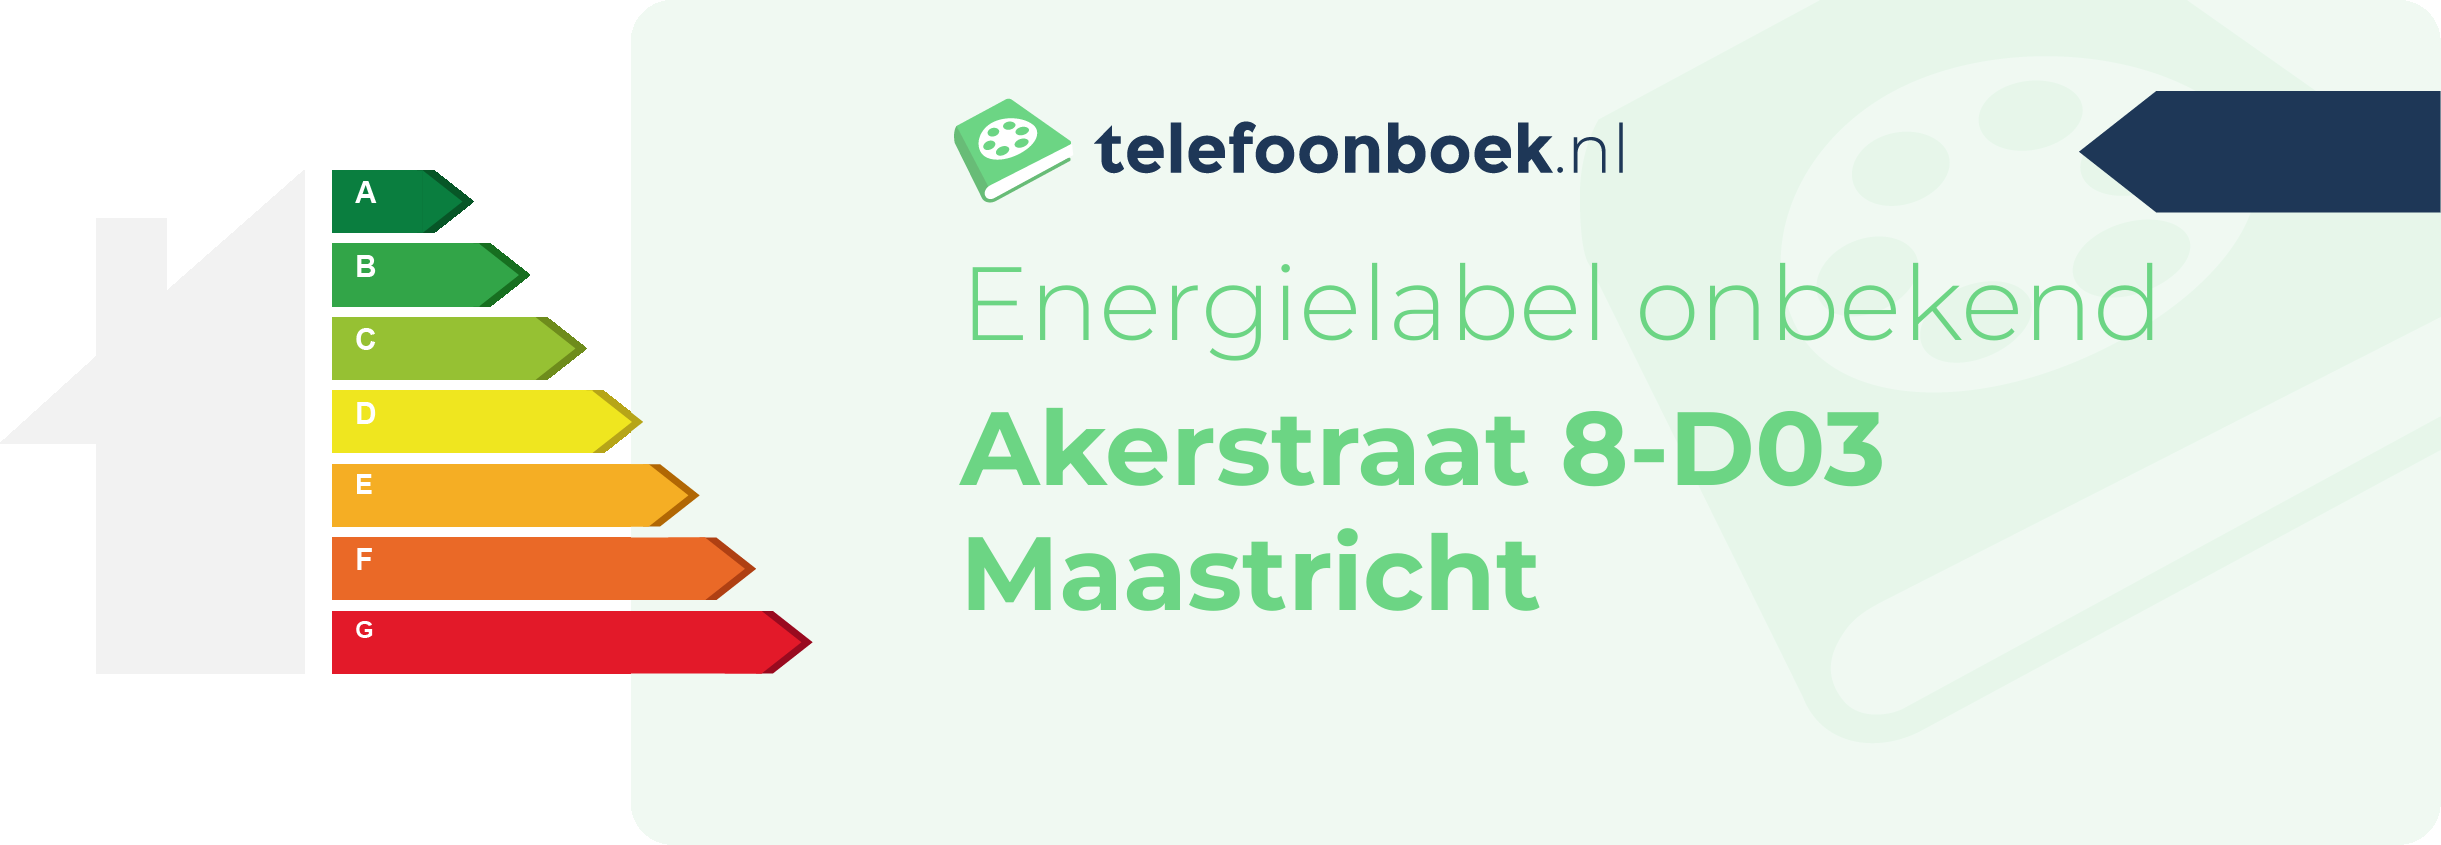 Energielabel Akerstraat 8-D03 Maastricht